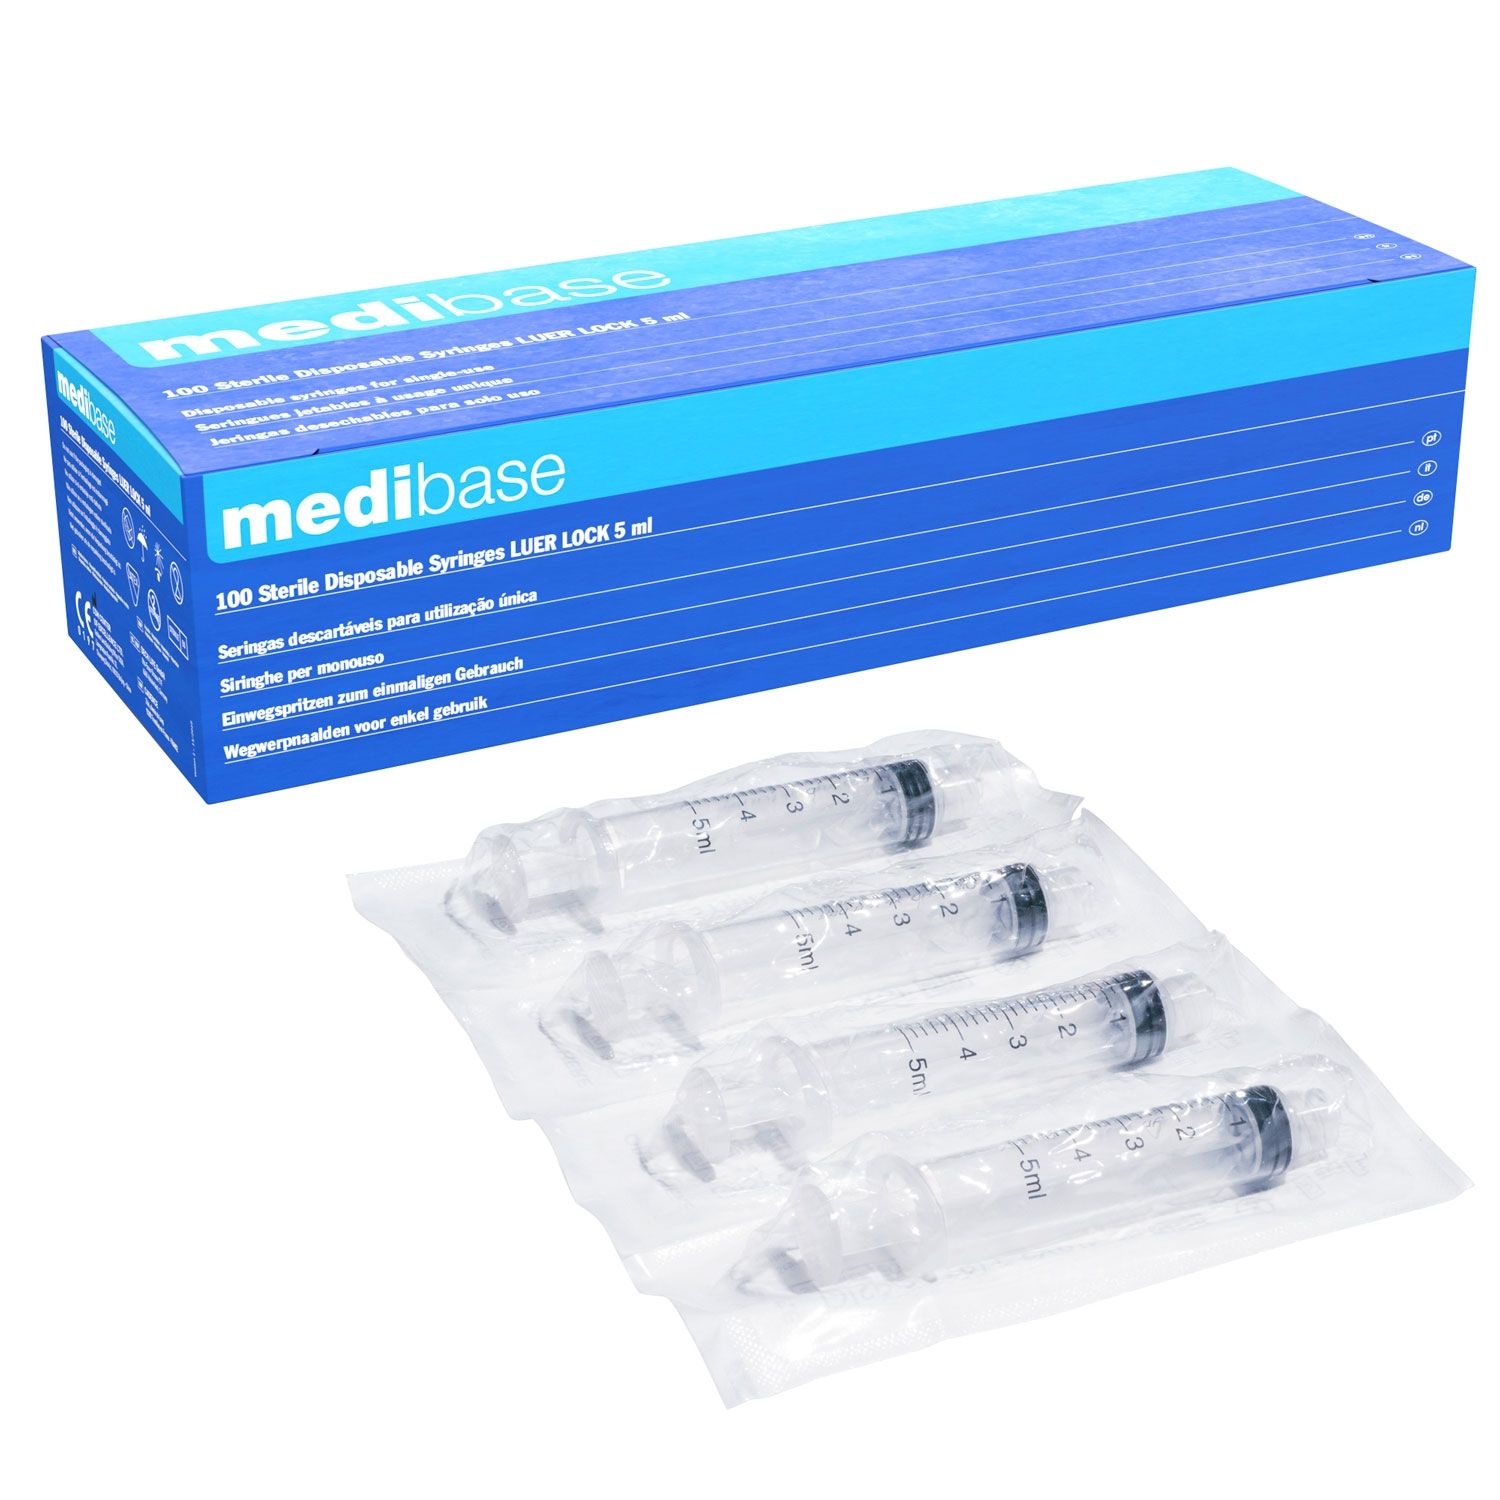 Medibase Sterile Syringes: Luer Lock - 5ml (100)